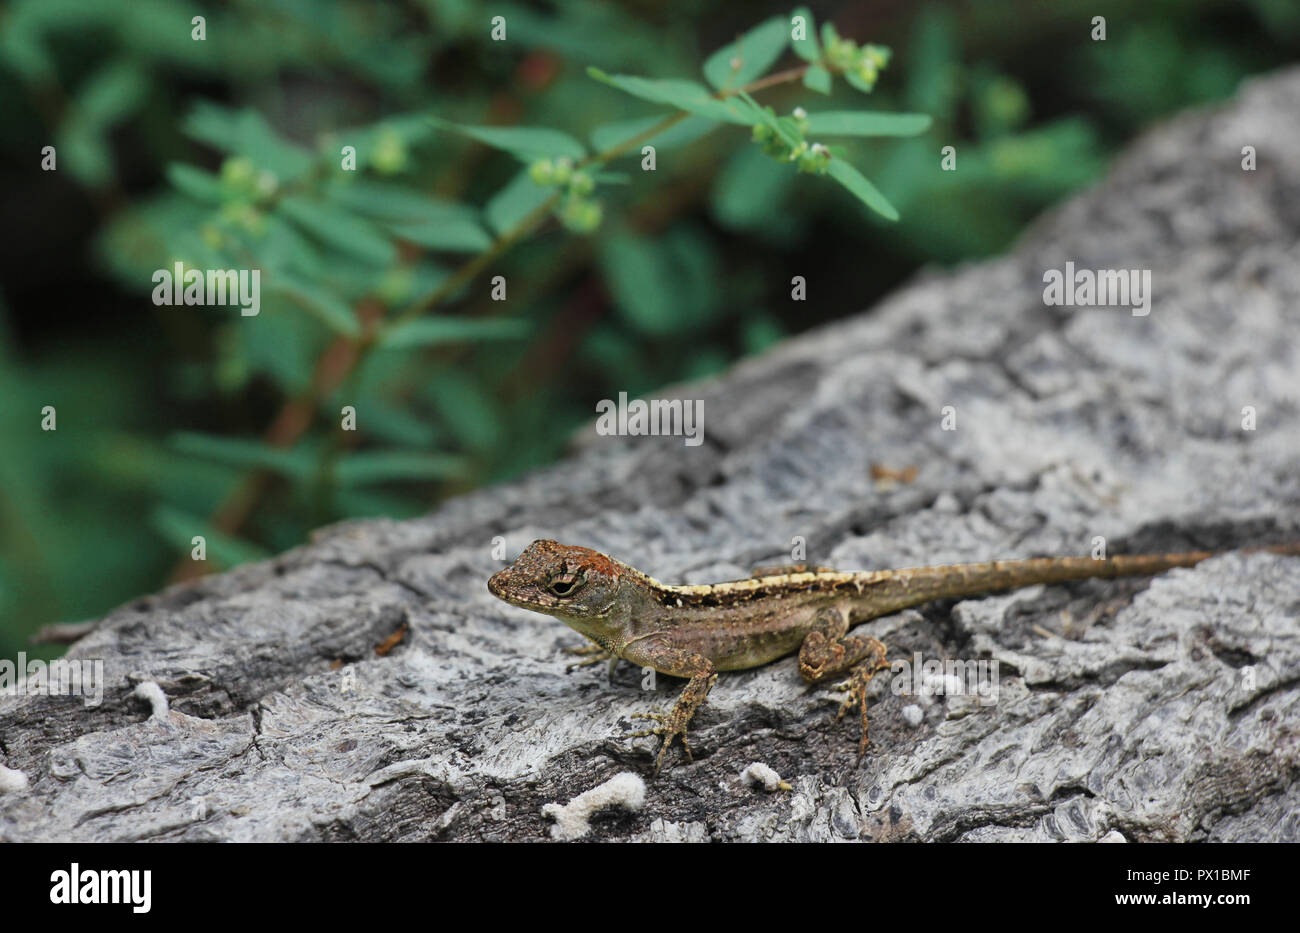 Libre de brown anole lizard sur le côté d'un tronc avec un fond vert Banque D'Images